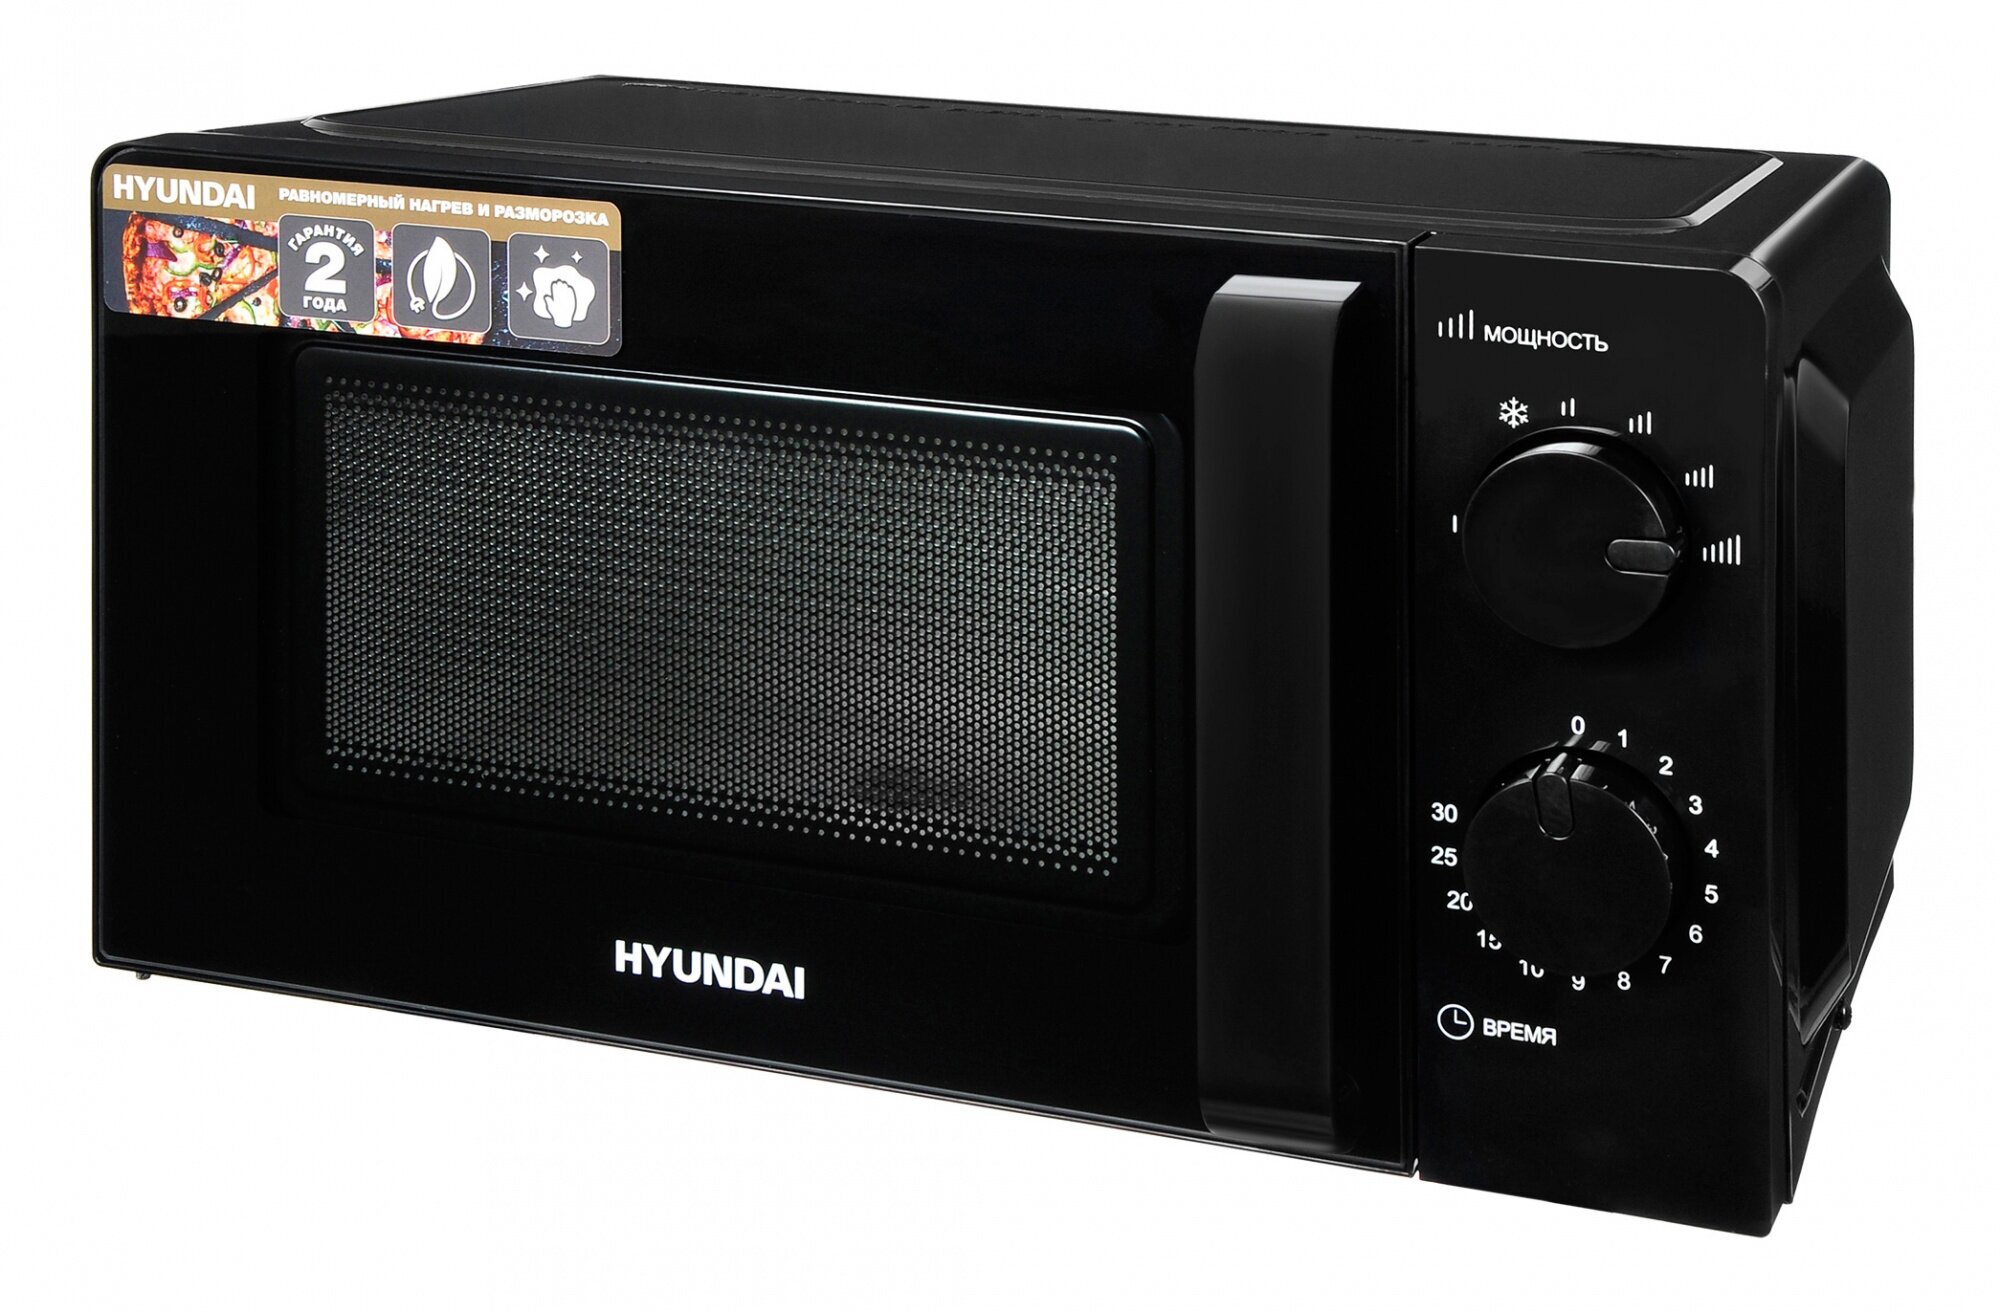 Микроволновая печь (СВЧ) Hyundai HYM-M2039 черный, мощность 700Вт, объем 20л, механическое управление 101